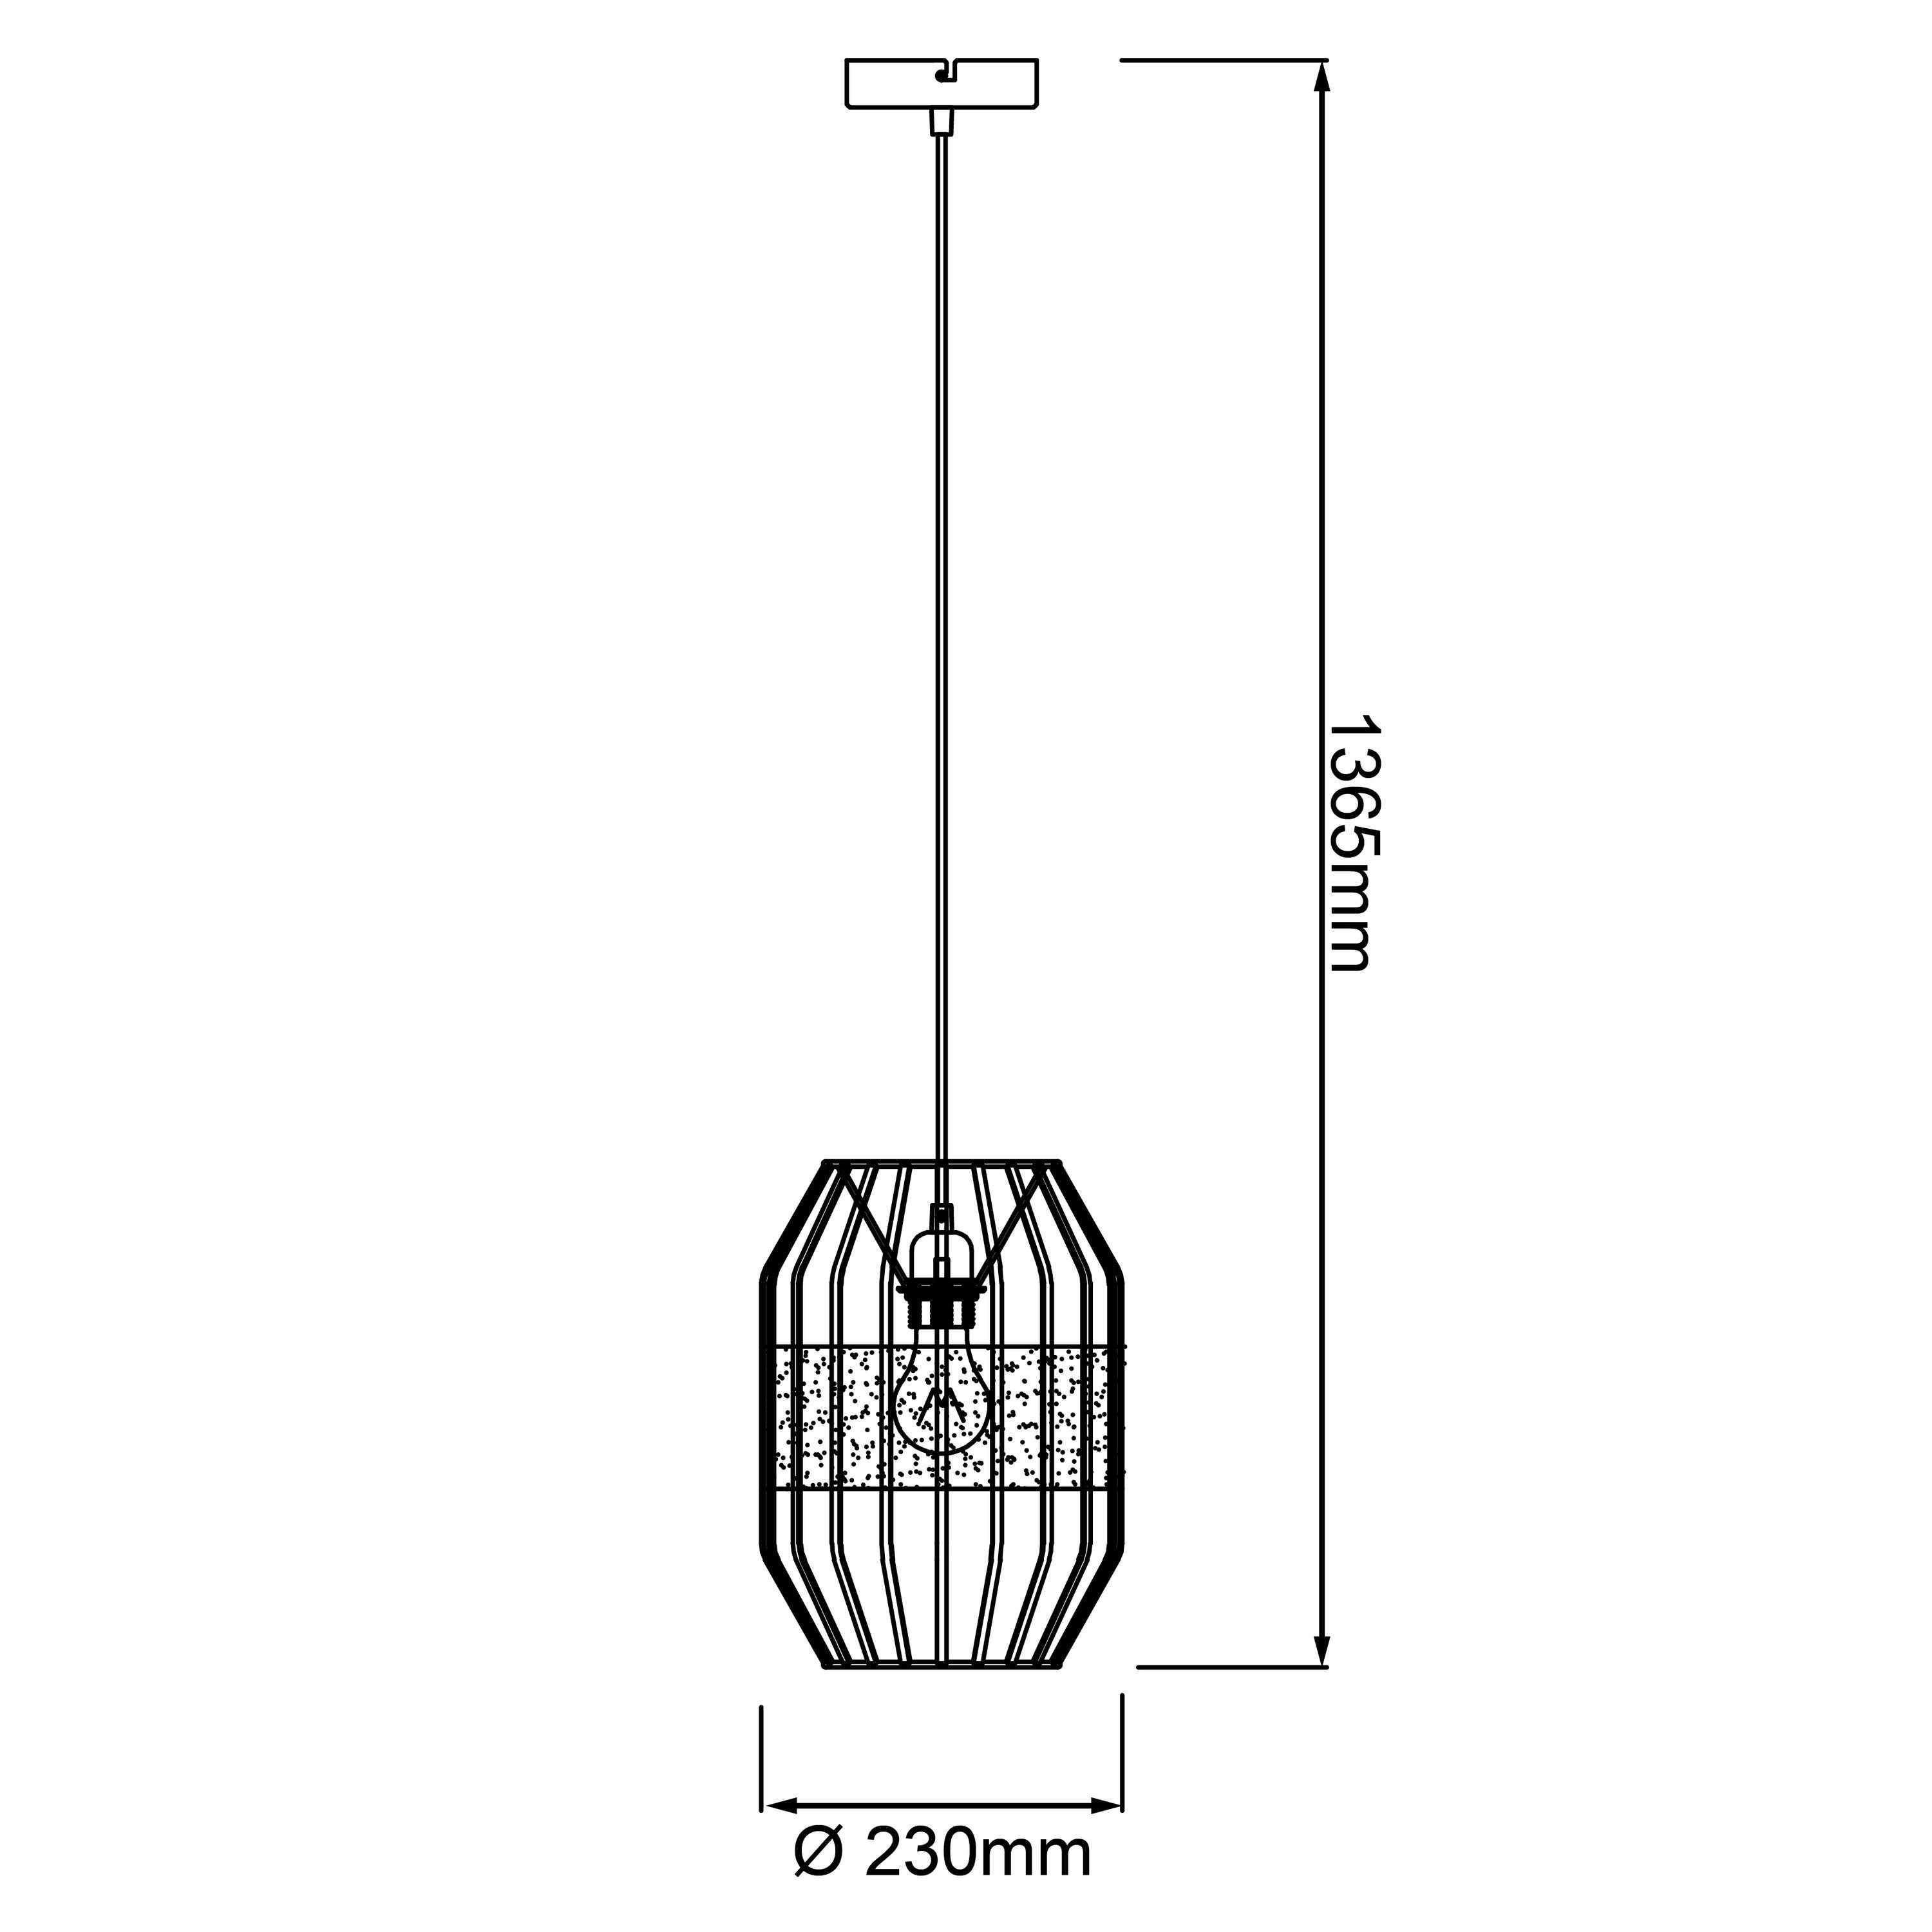 Slope Pendelleuchte Brilliant 40W, Lampe, E27, schwarz/natur, Slope, A60, 1x Pendelleuchte Kabel 23cm